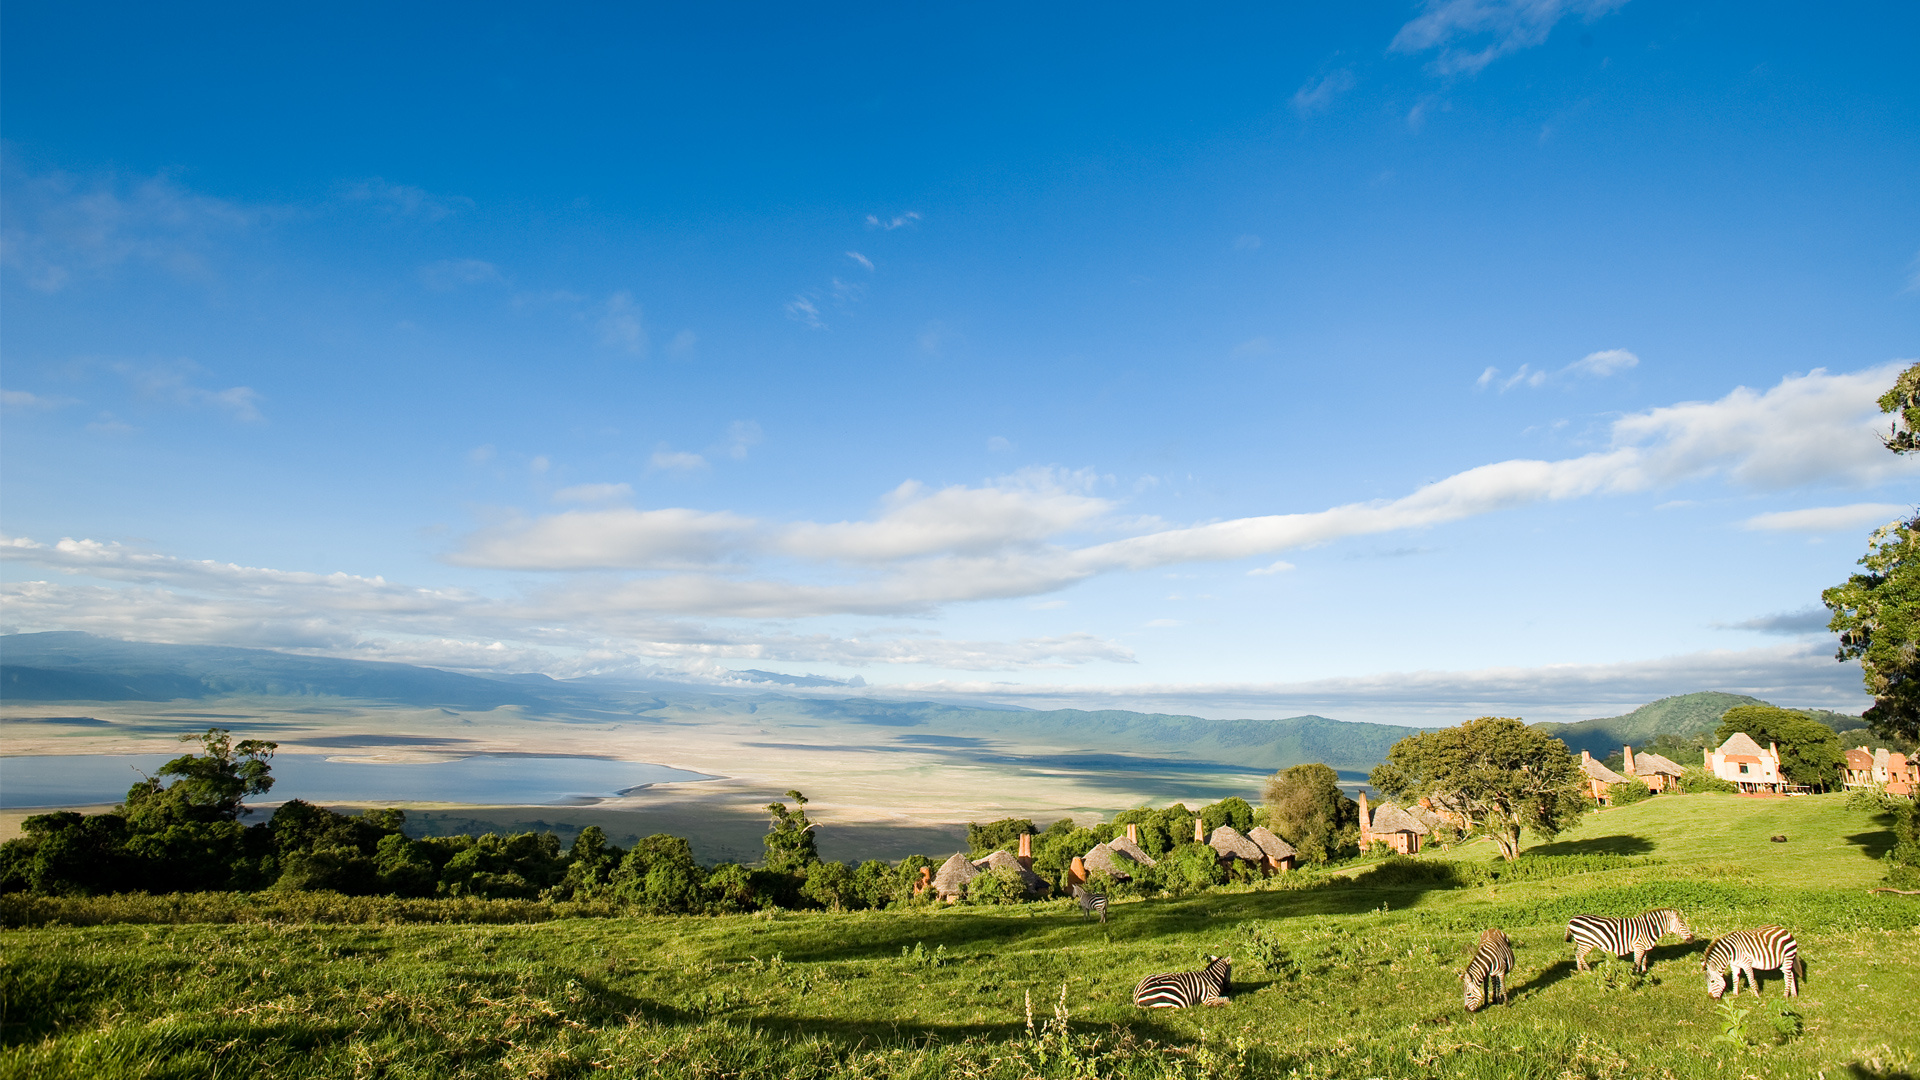 Ngorongoro Crater, AndBeyond Ngorongoro Crater Lodge, 1920x1080 Full HD Desktop